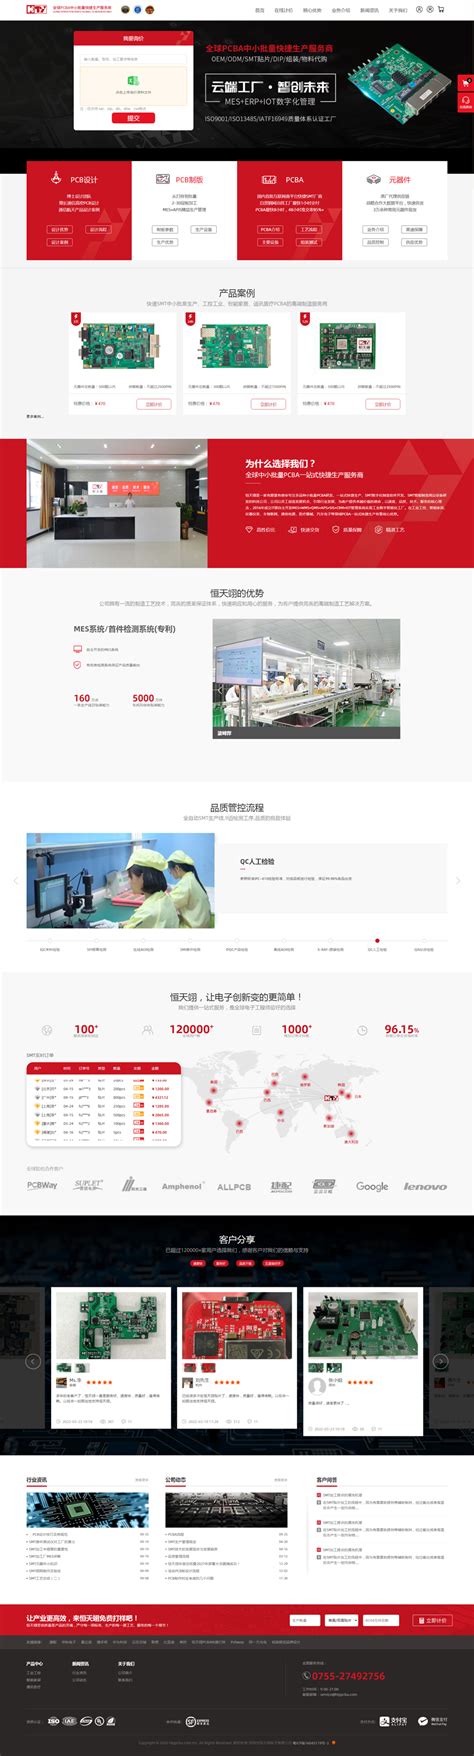 江西29张品牌名片亮相2021年中国自主品牌博览会_江西网络广播电视台